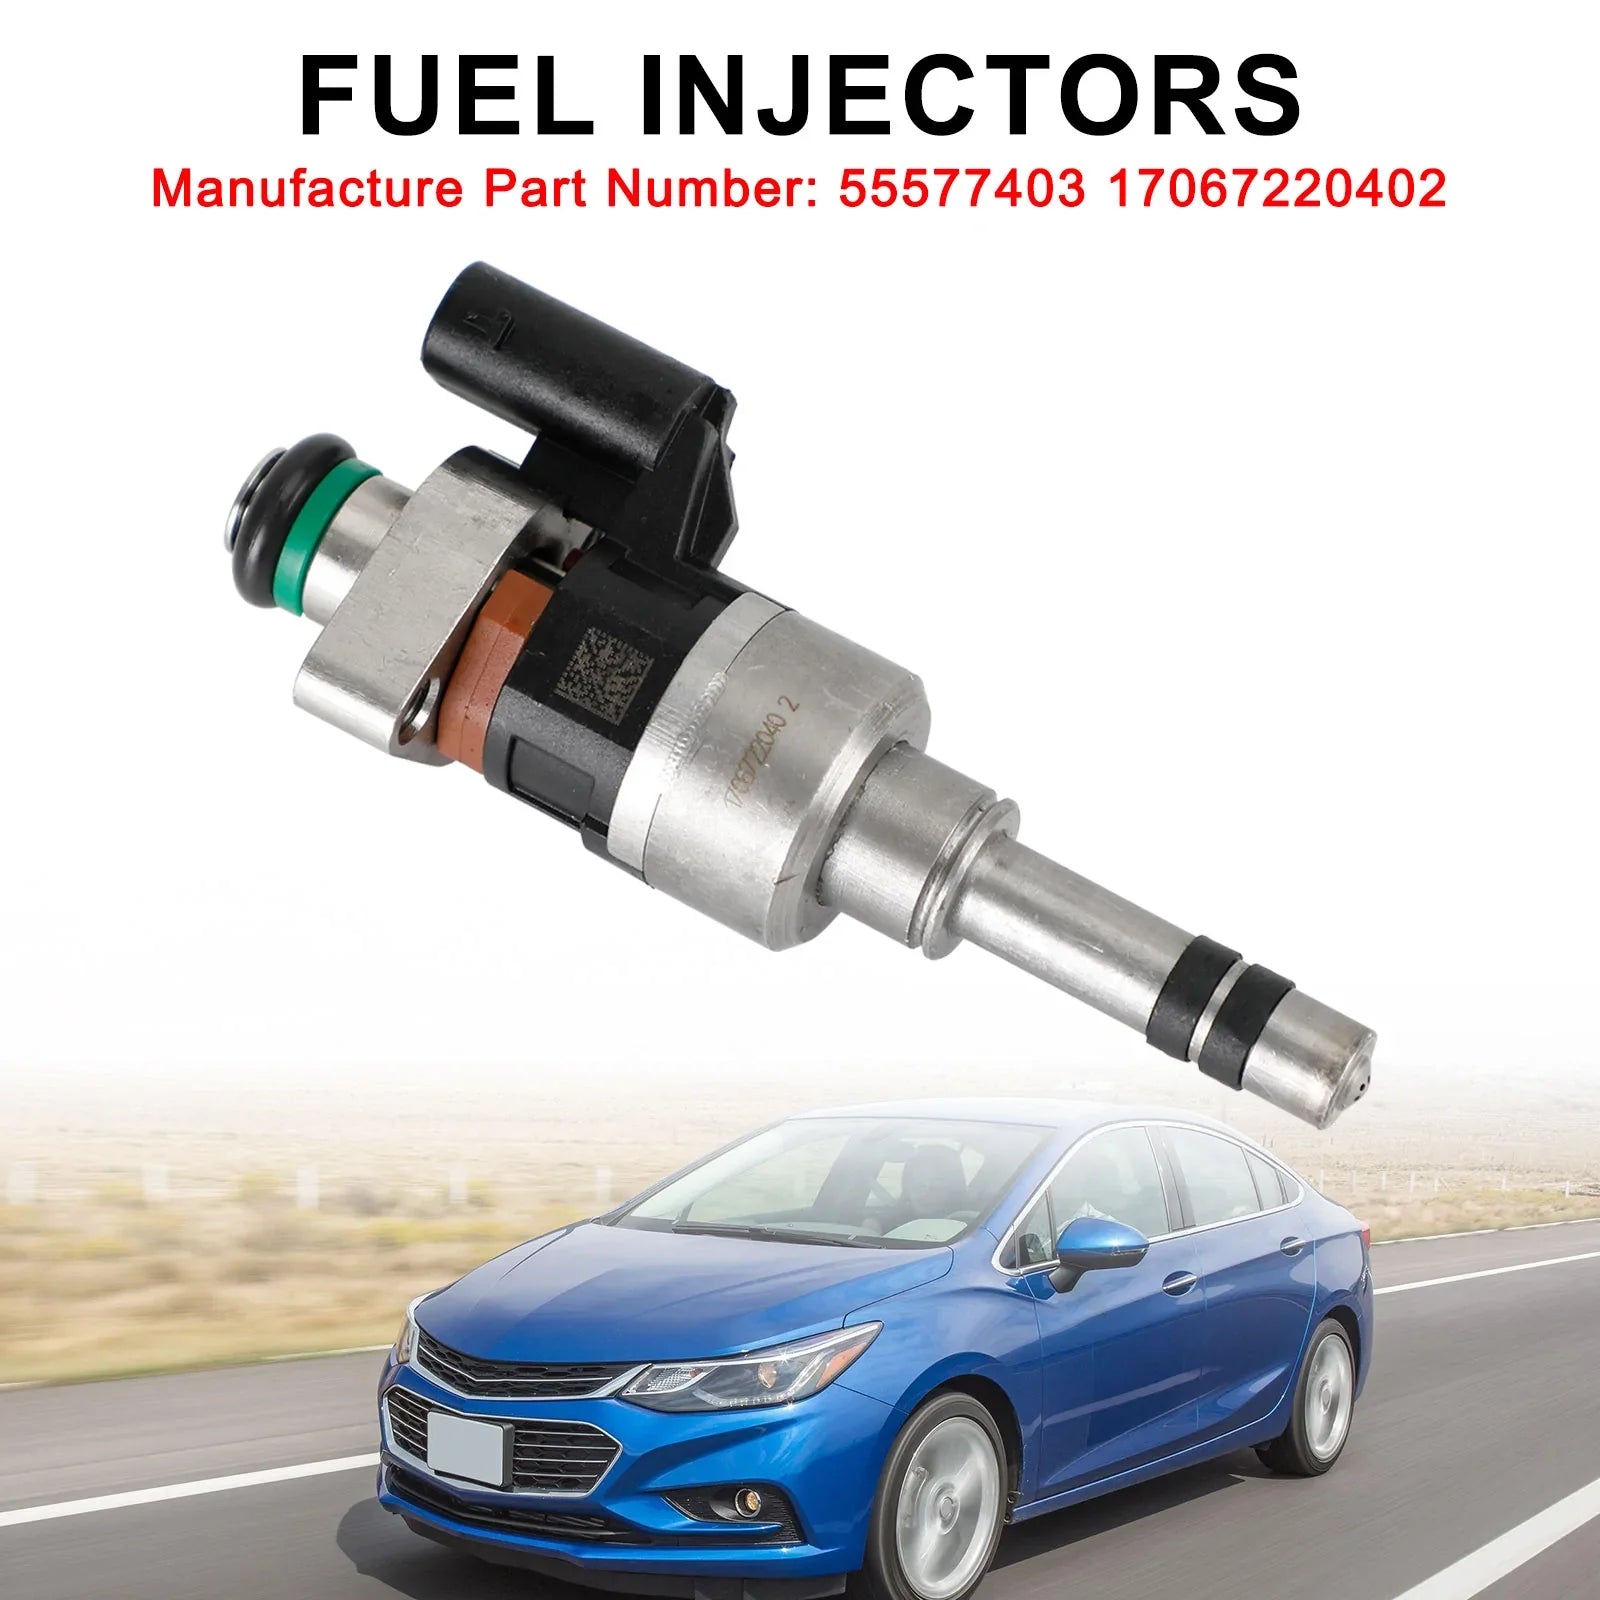 1 pièces GMC 2016-2019/Chevrolet Cruze Malibu 1.4L 1.5L L4 Injecteurs de Carburant 55577403